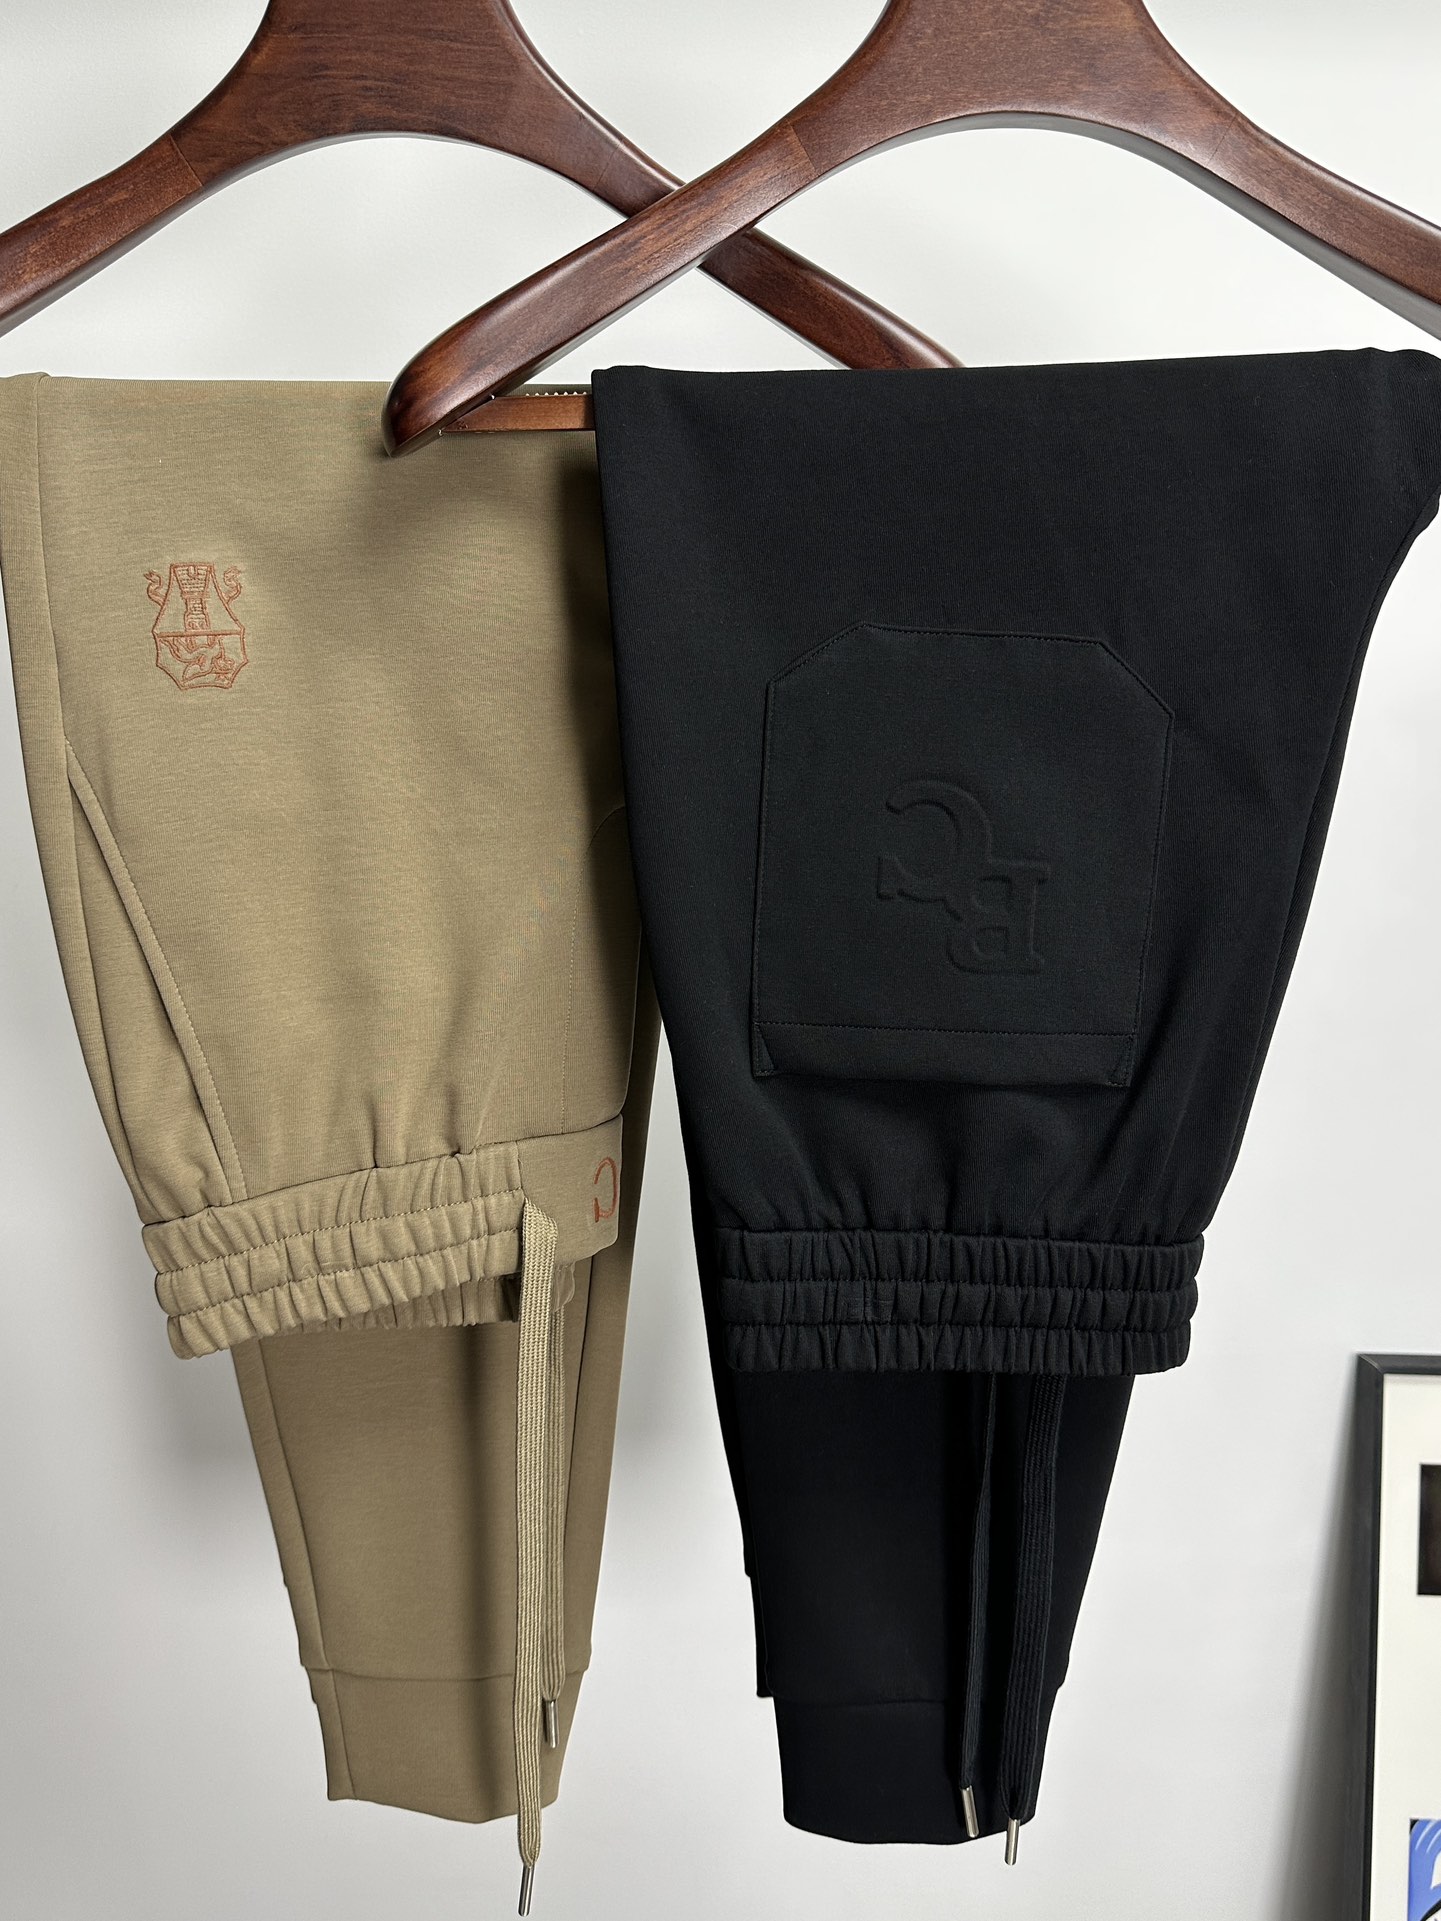 欧货BC家-24ss春夏新款进口纯棉质地复合面料再见基础款帅气卫裤.....一线时尚品牌出色独到的设计以